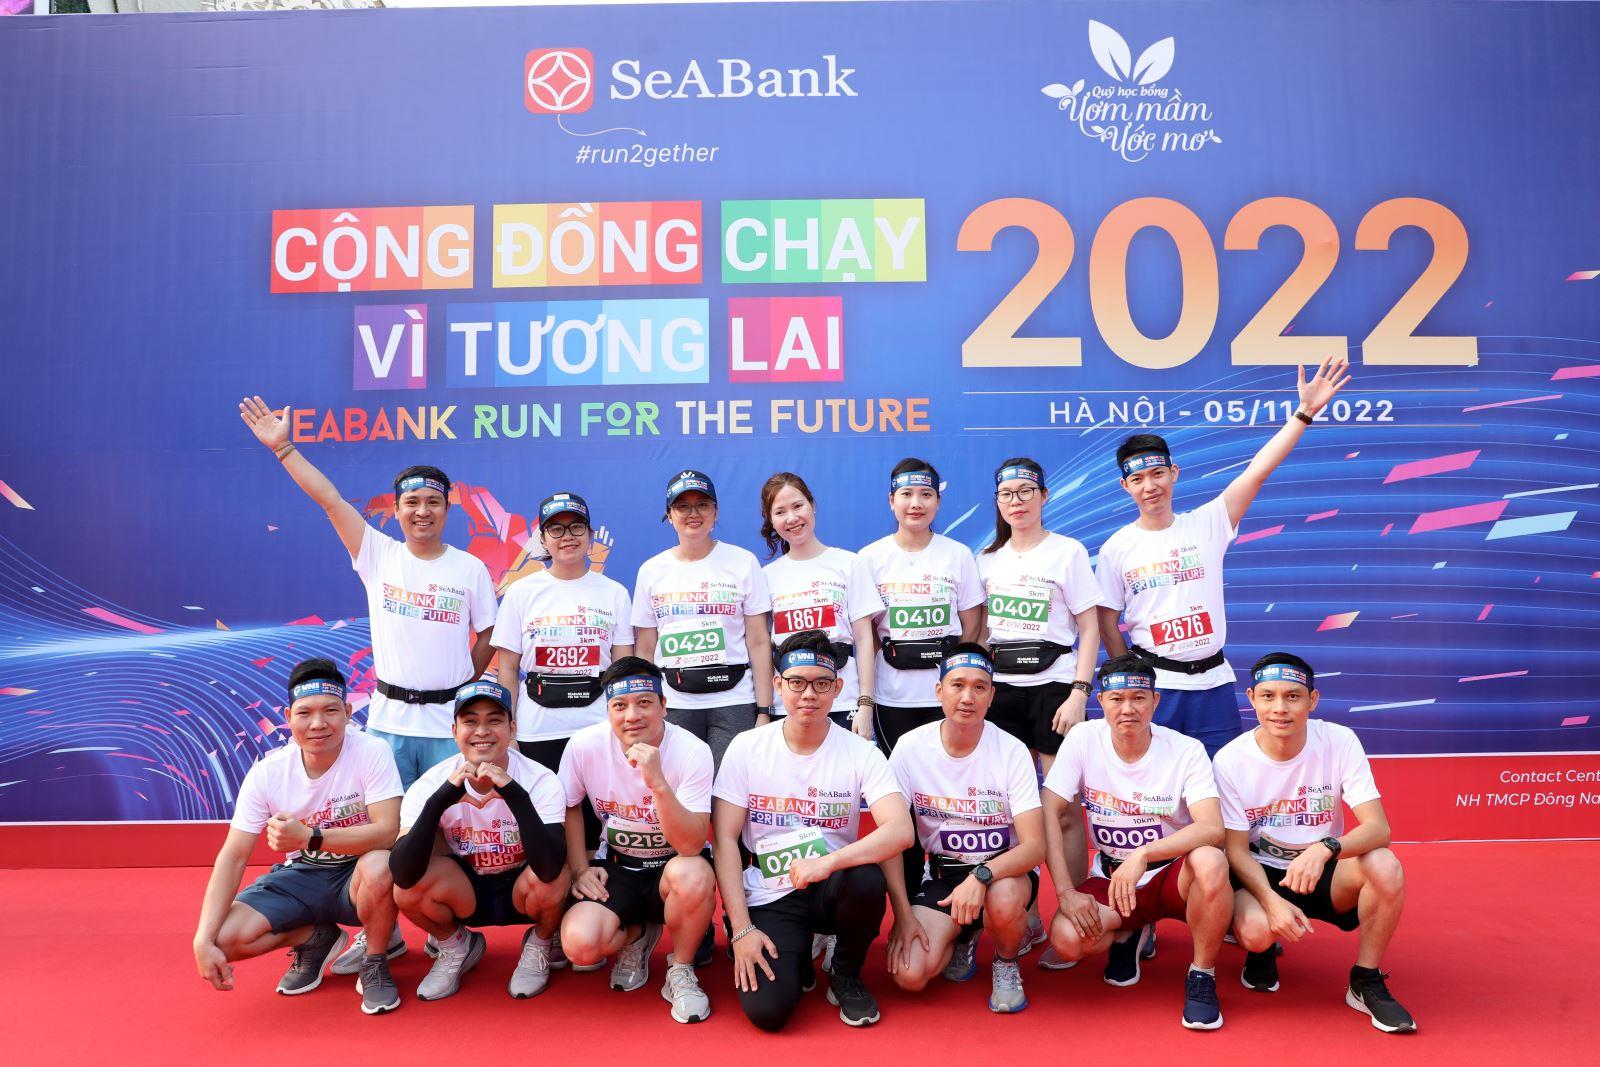 Bảo hiểm Hàng không (VNI) đồng hành cùng Giải chạy Seabank Run For the Future “Cộng đồng chạy vì tương lai” 